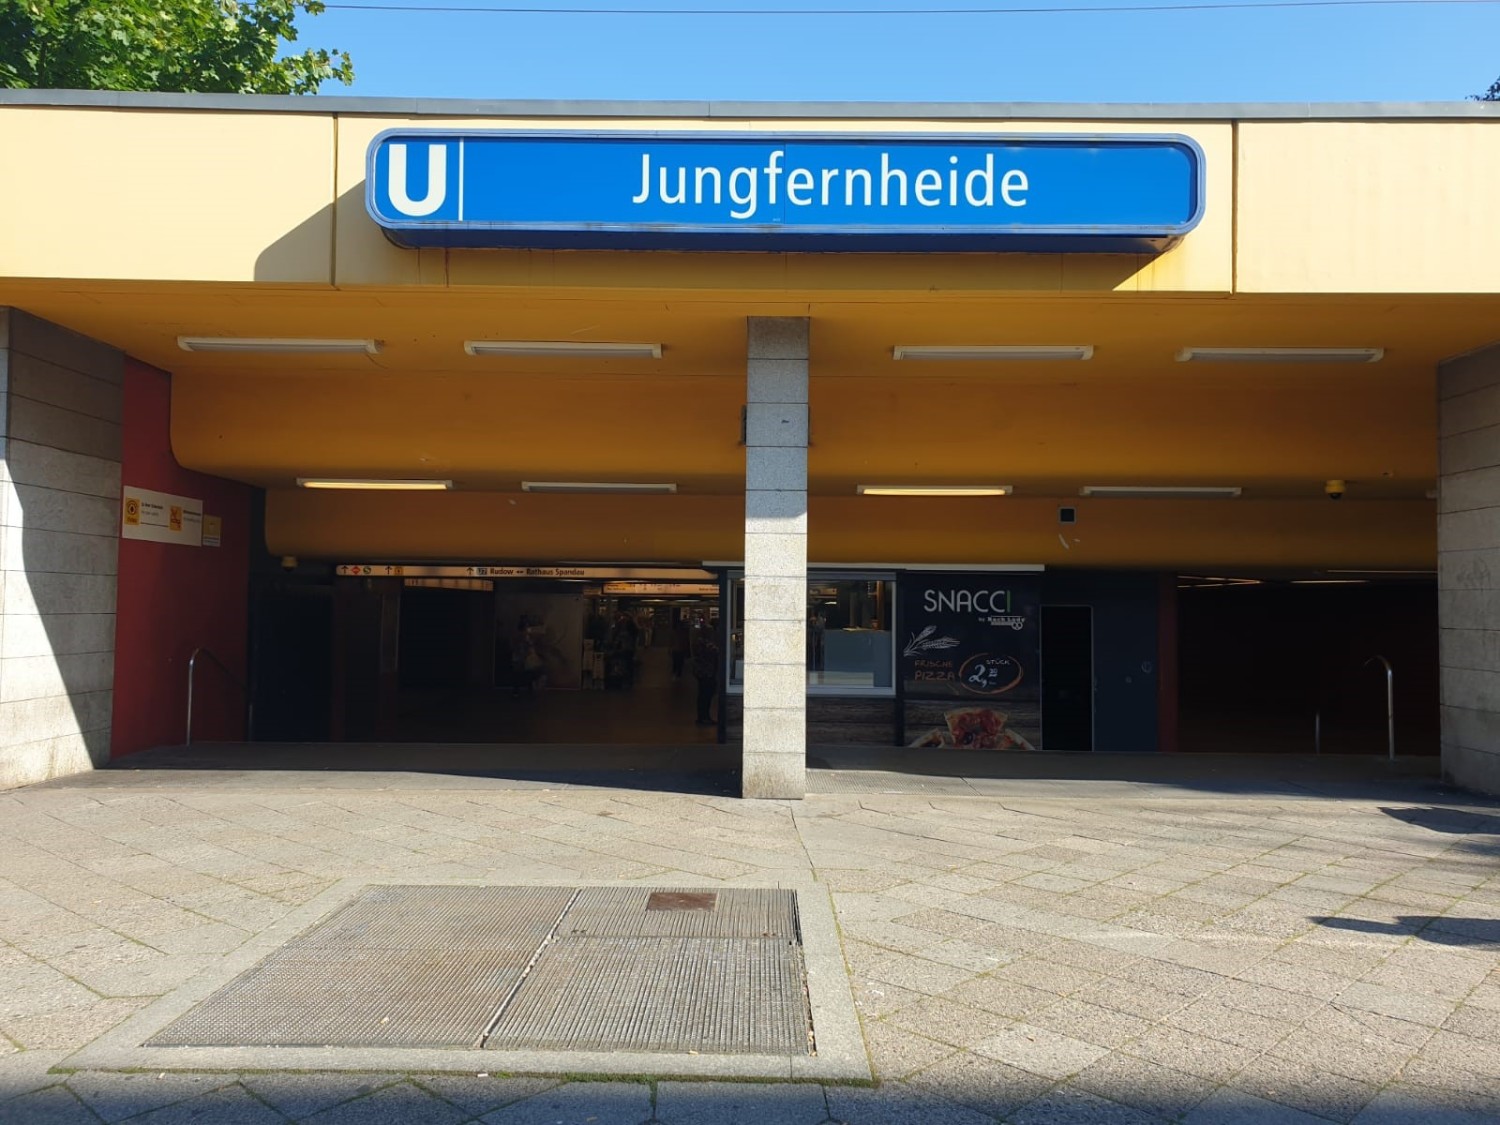 Bahnhof Jungfernheide, Eingang rechts